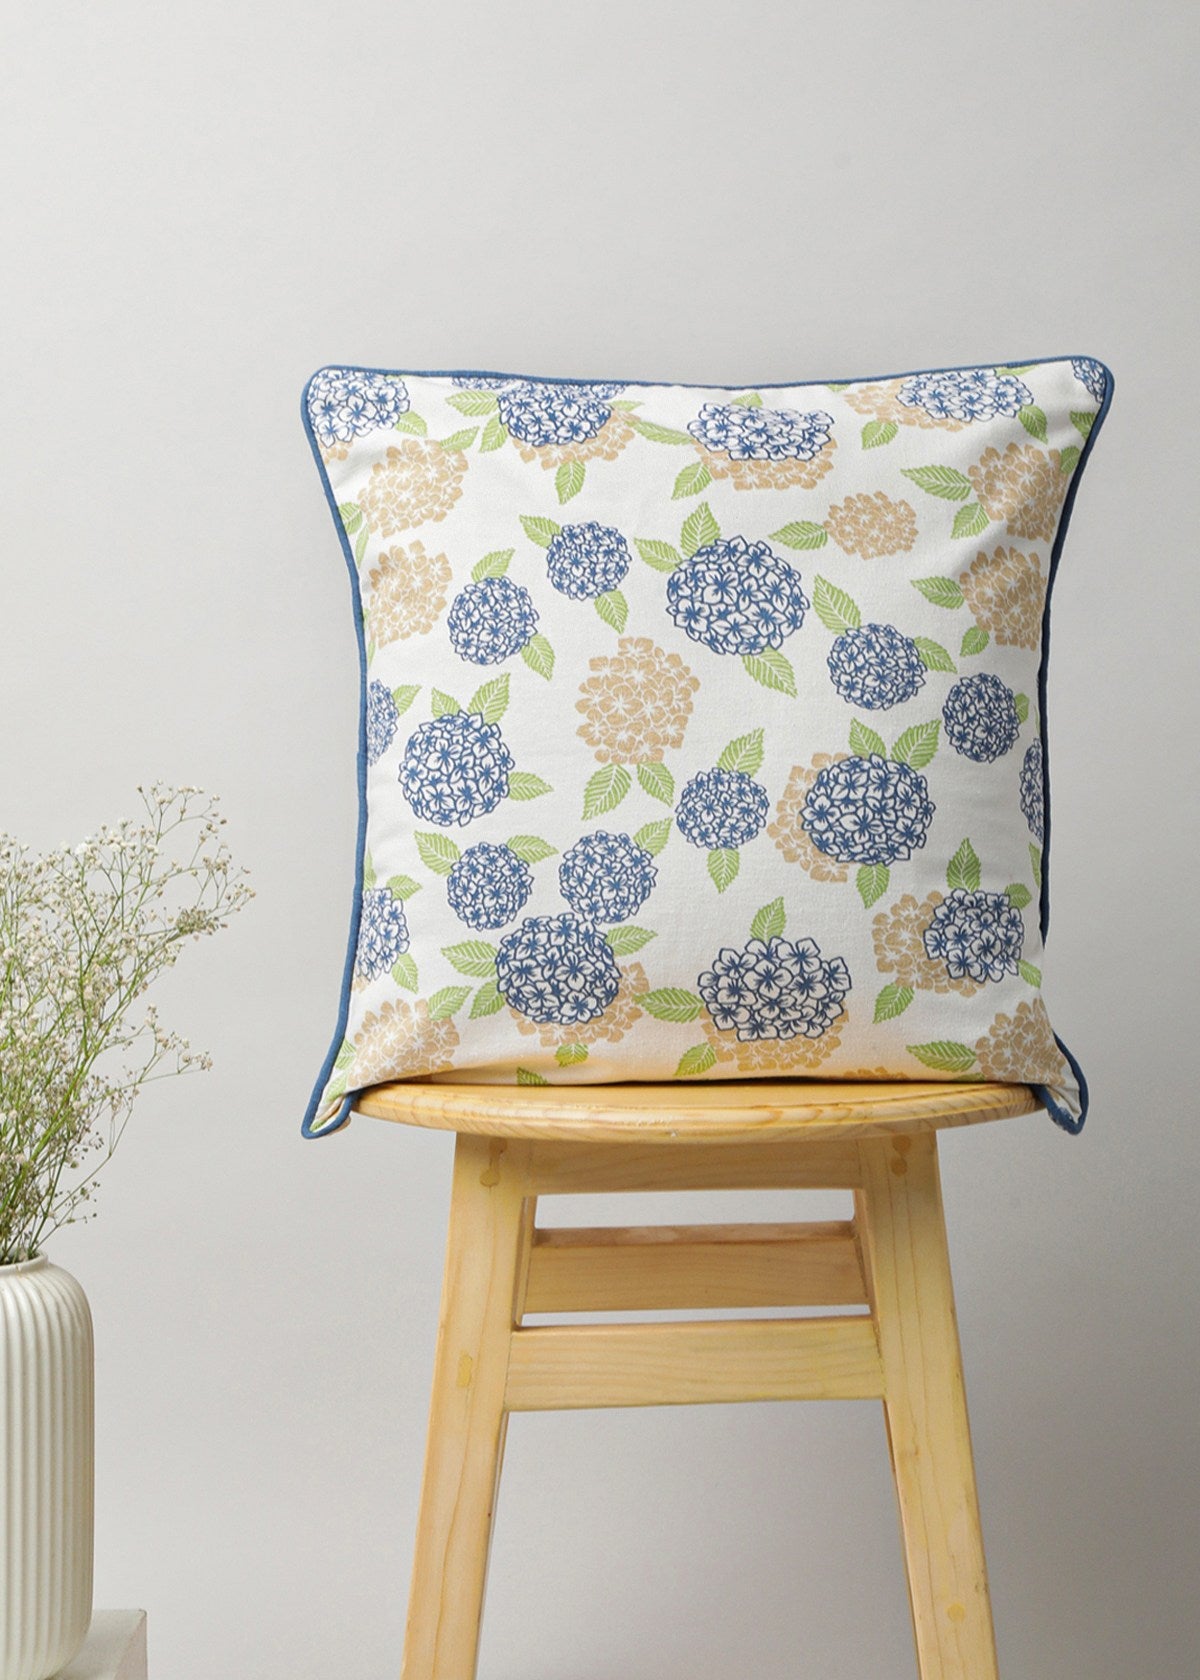 Hydrangeas Cushion 100% cotton floral cushion cover for sofa